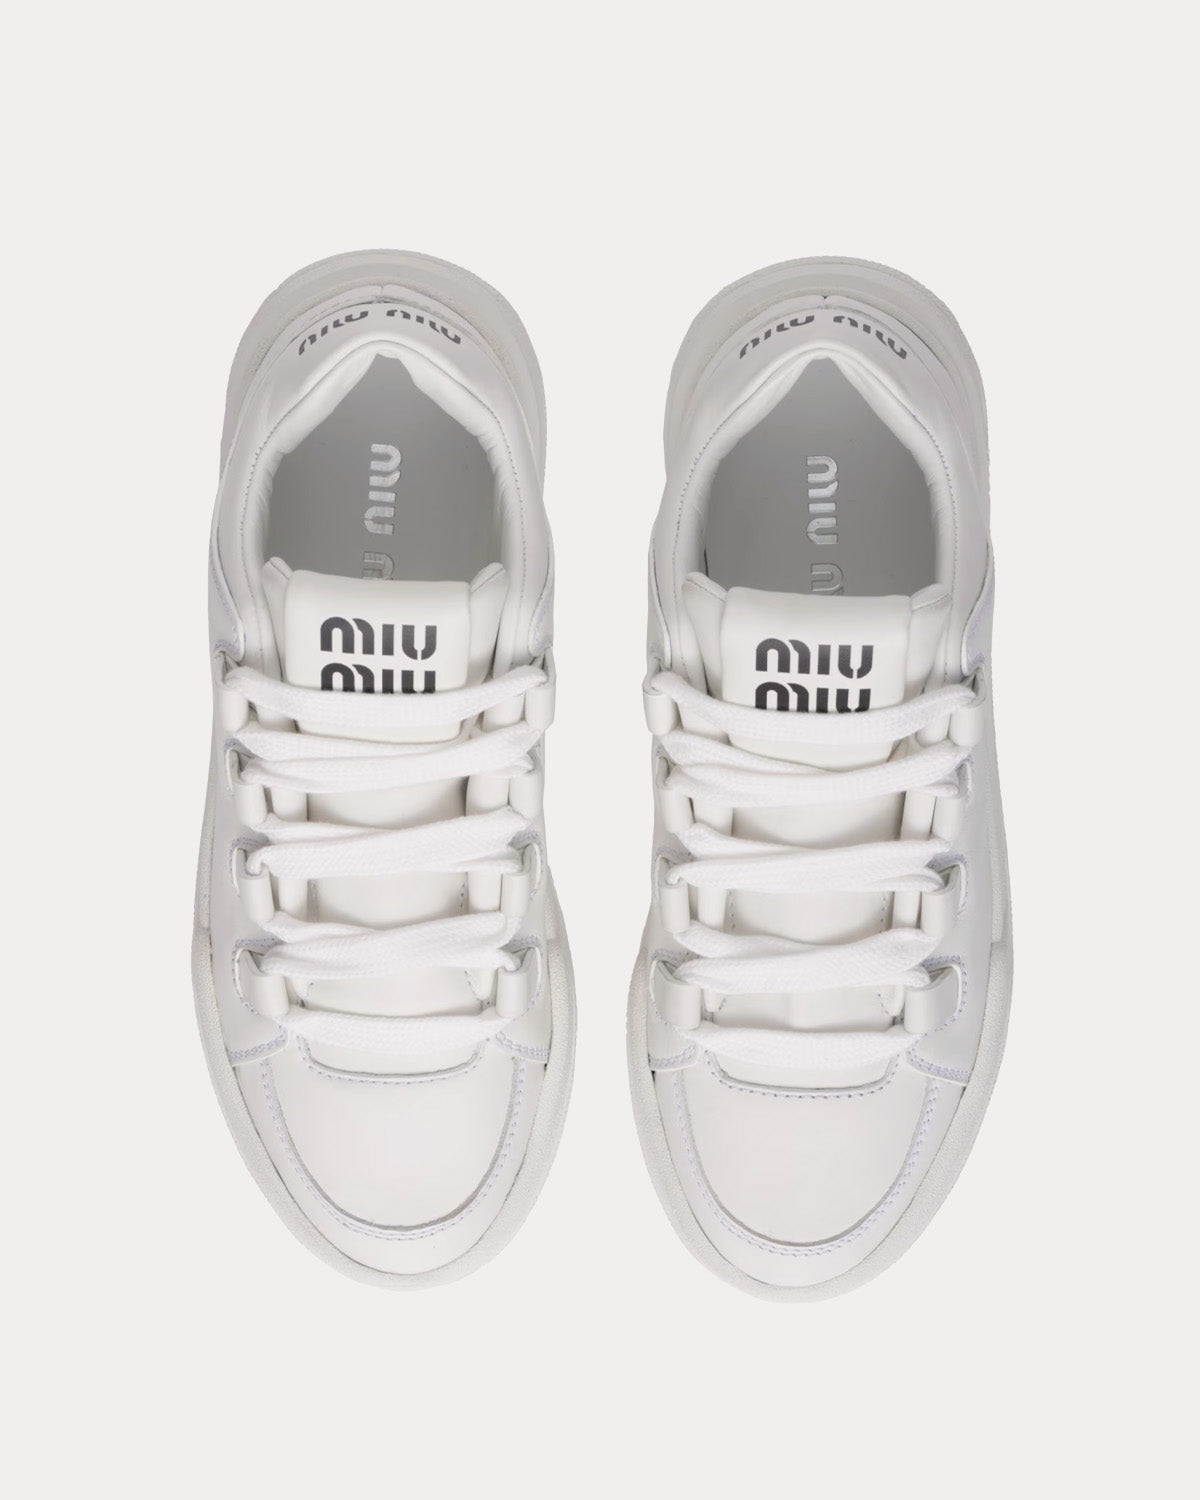 Miu Miu - Leather White Low Top Sneakers